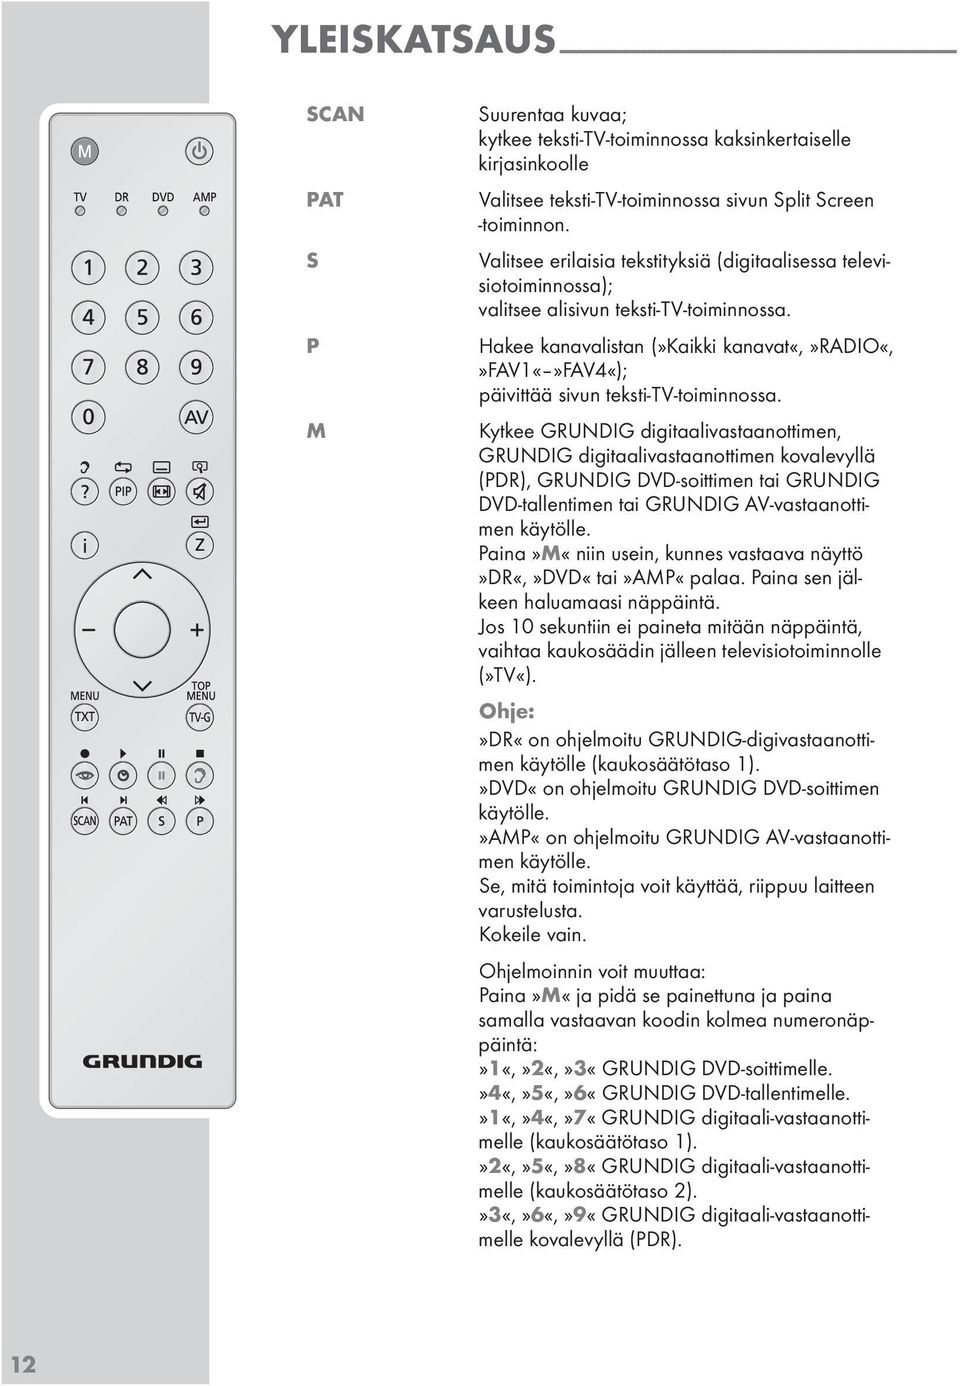 Hakee kanavalitan (»Kaikki kanavat«,»radio«,»favfav4«); päivittää ivun tekti-tv-toiminnoa.